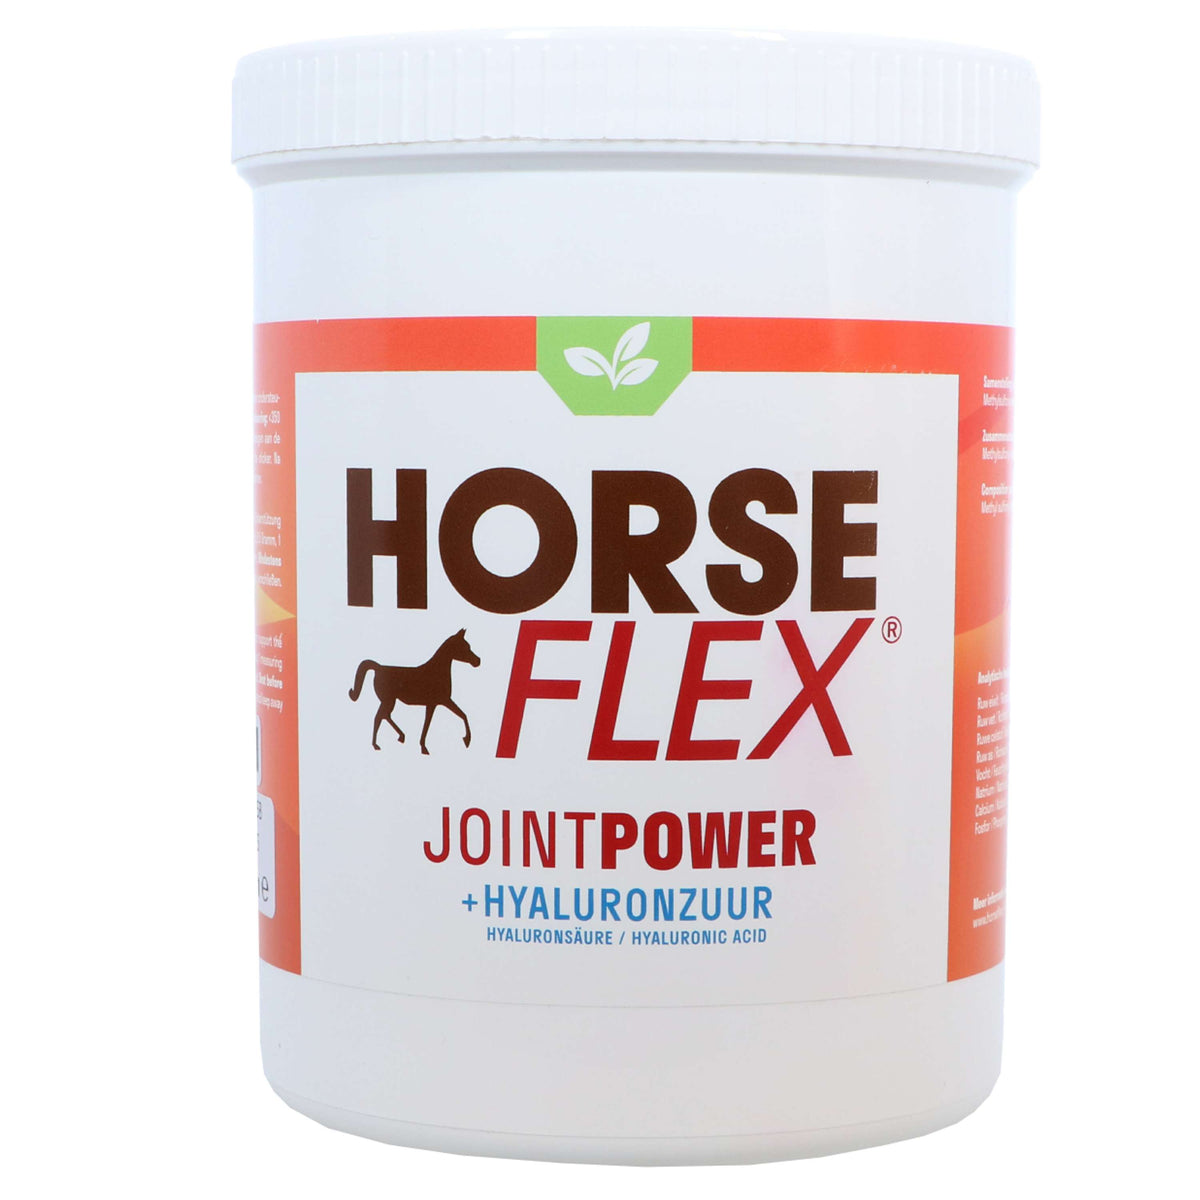 HorseFlex Jointpower + Hyaluronsäure